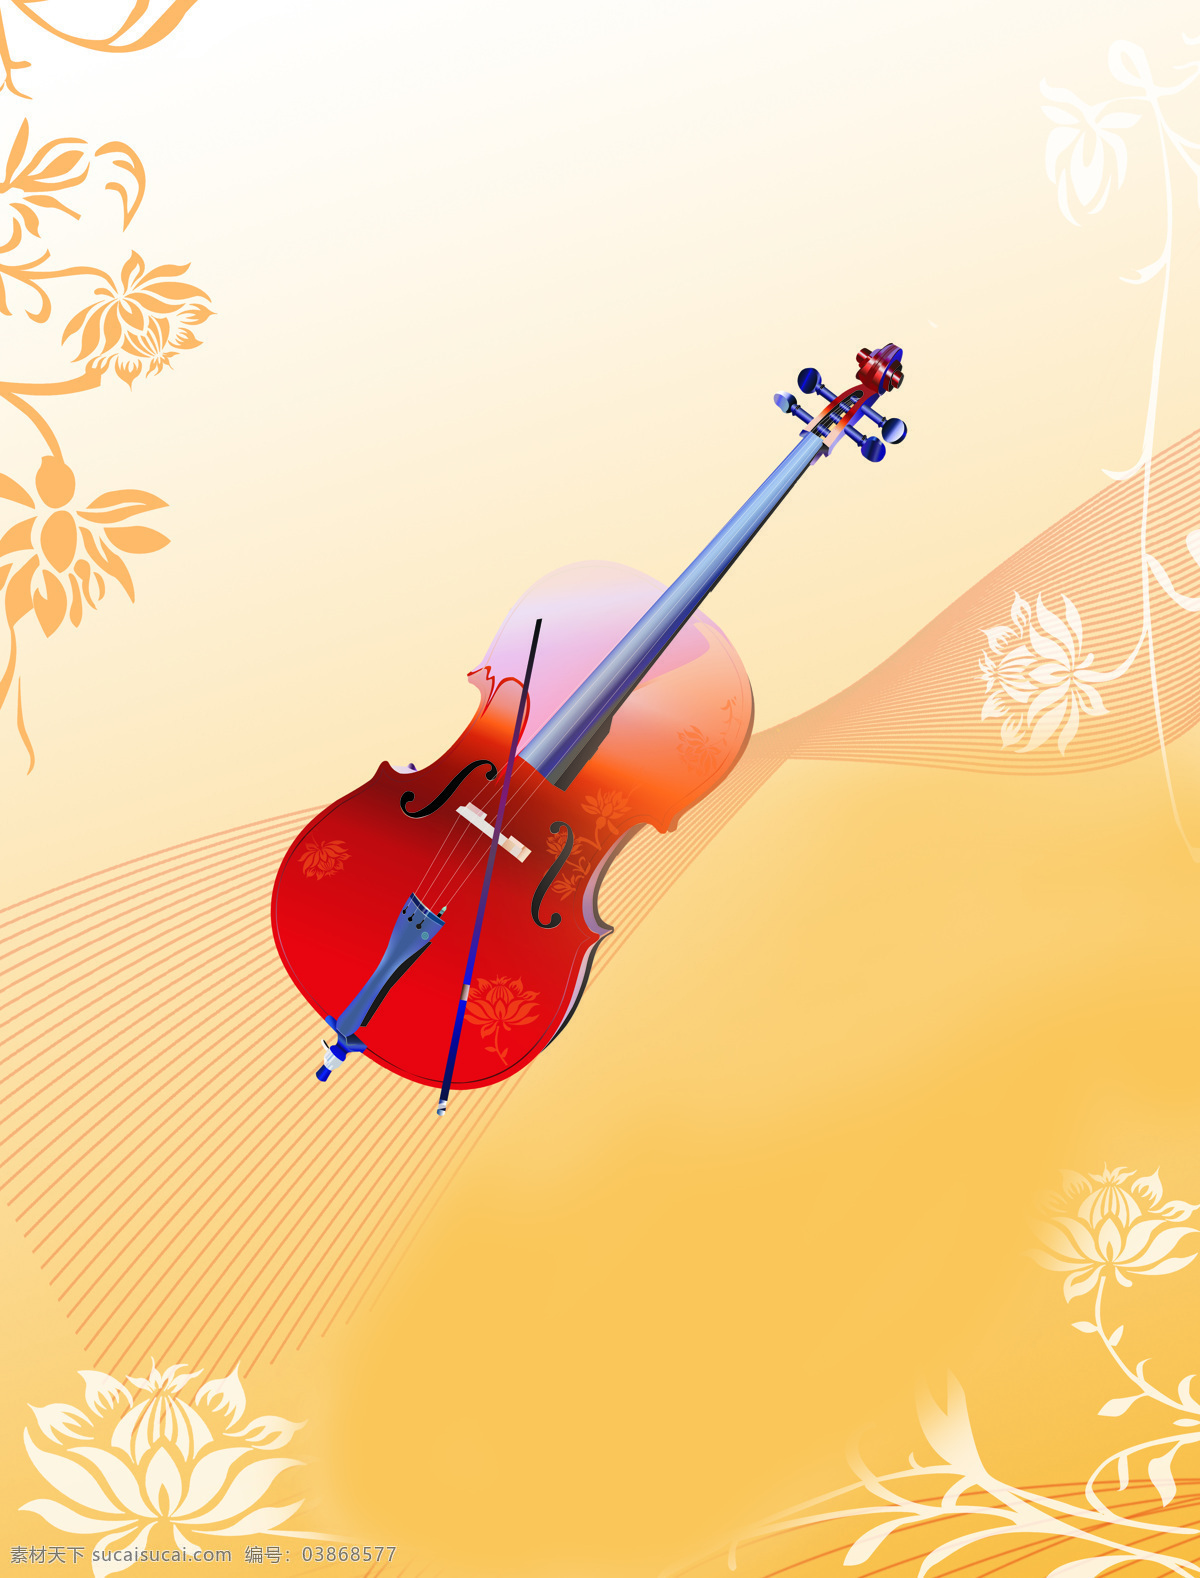 小提琴 底纹 底纹边框 花纹 黄底 线条 移门 音乐 移门图案 装饰素材